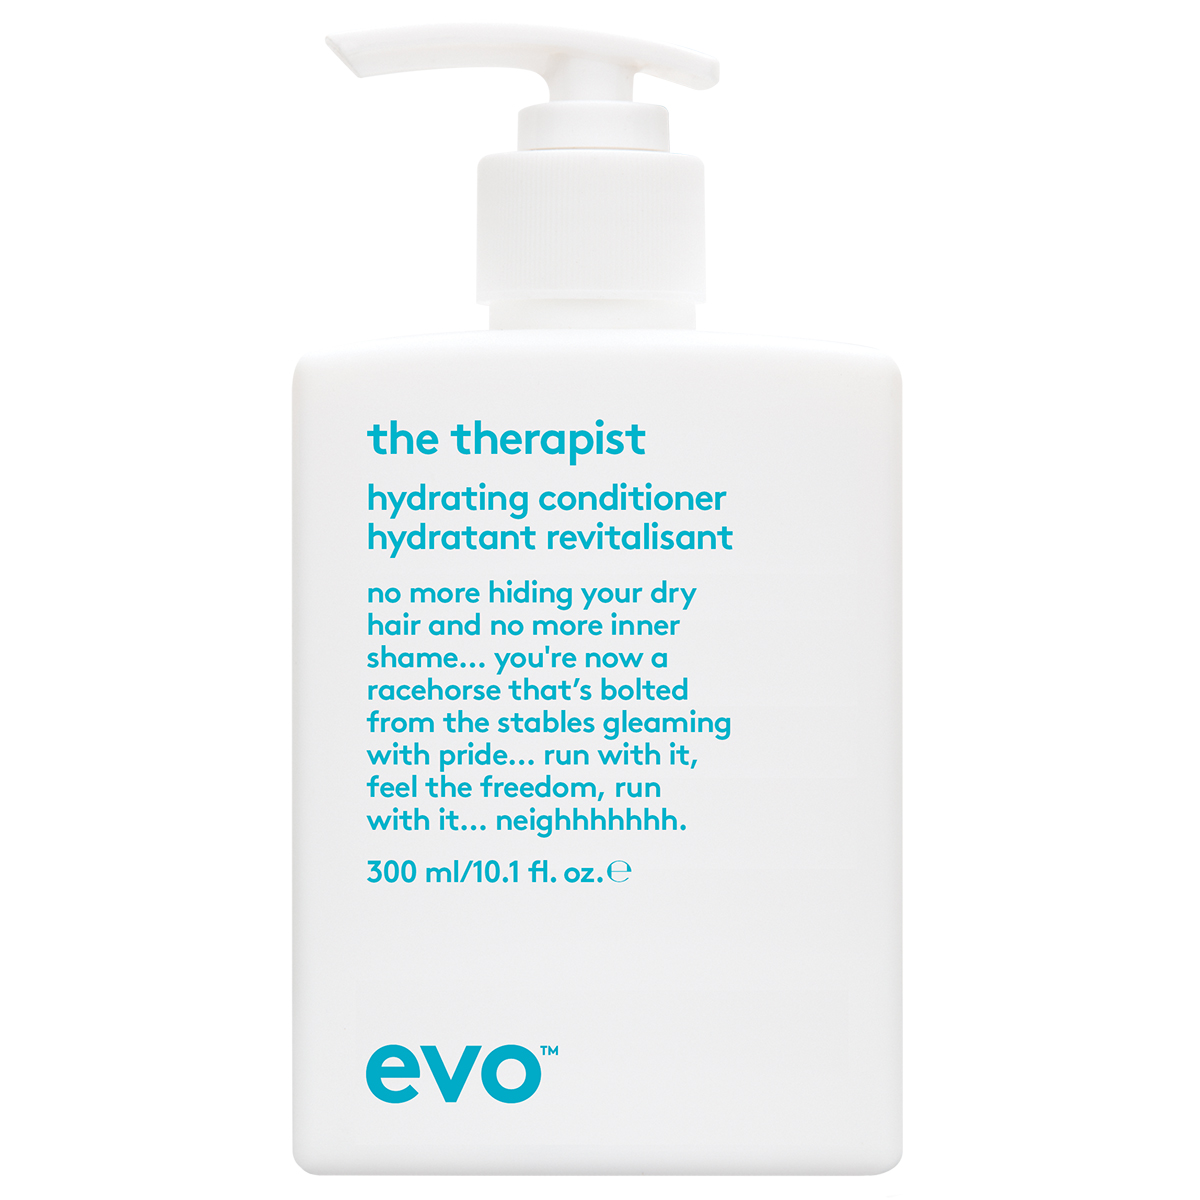 Hydrate The Therapist Calming Conditioner, 300 ml evo Conditioner - Balsam